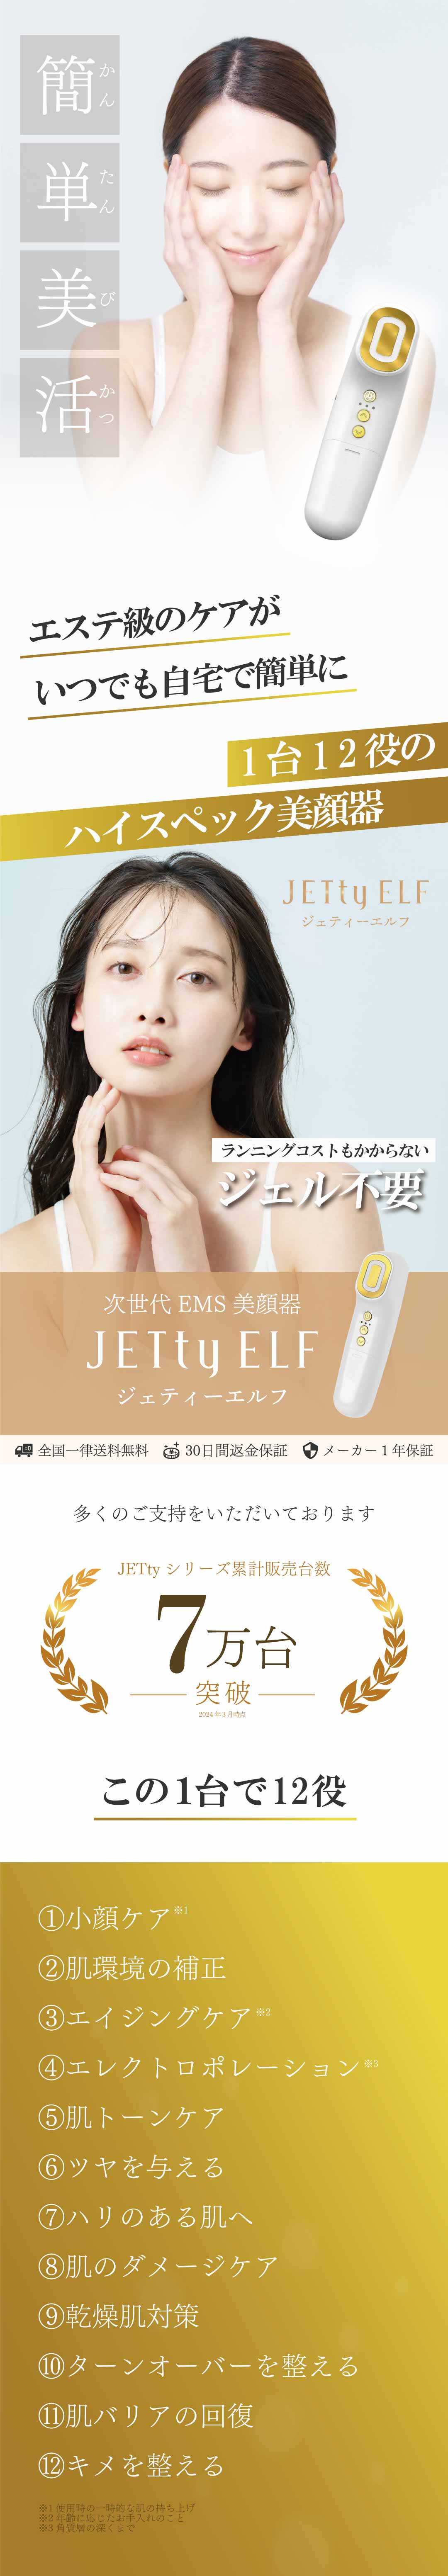 限定セット商品 美顔器 ems リフトアップ効果 50代JETty ELF GOLD 